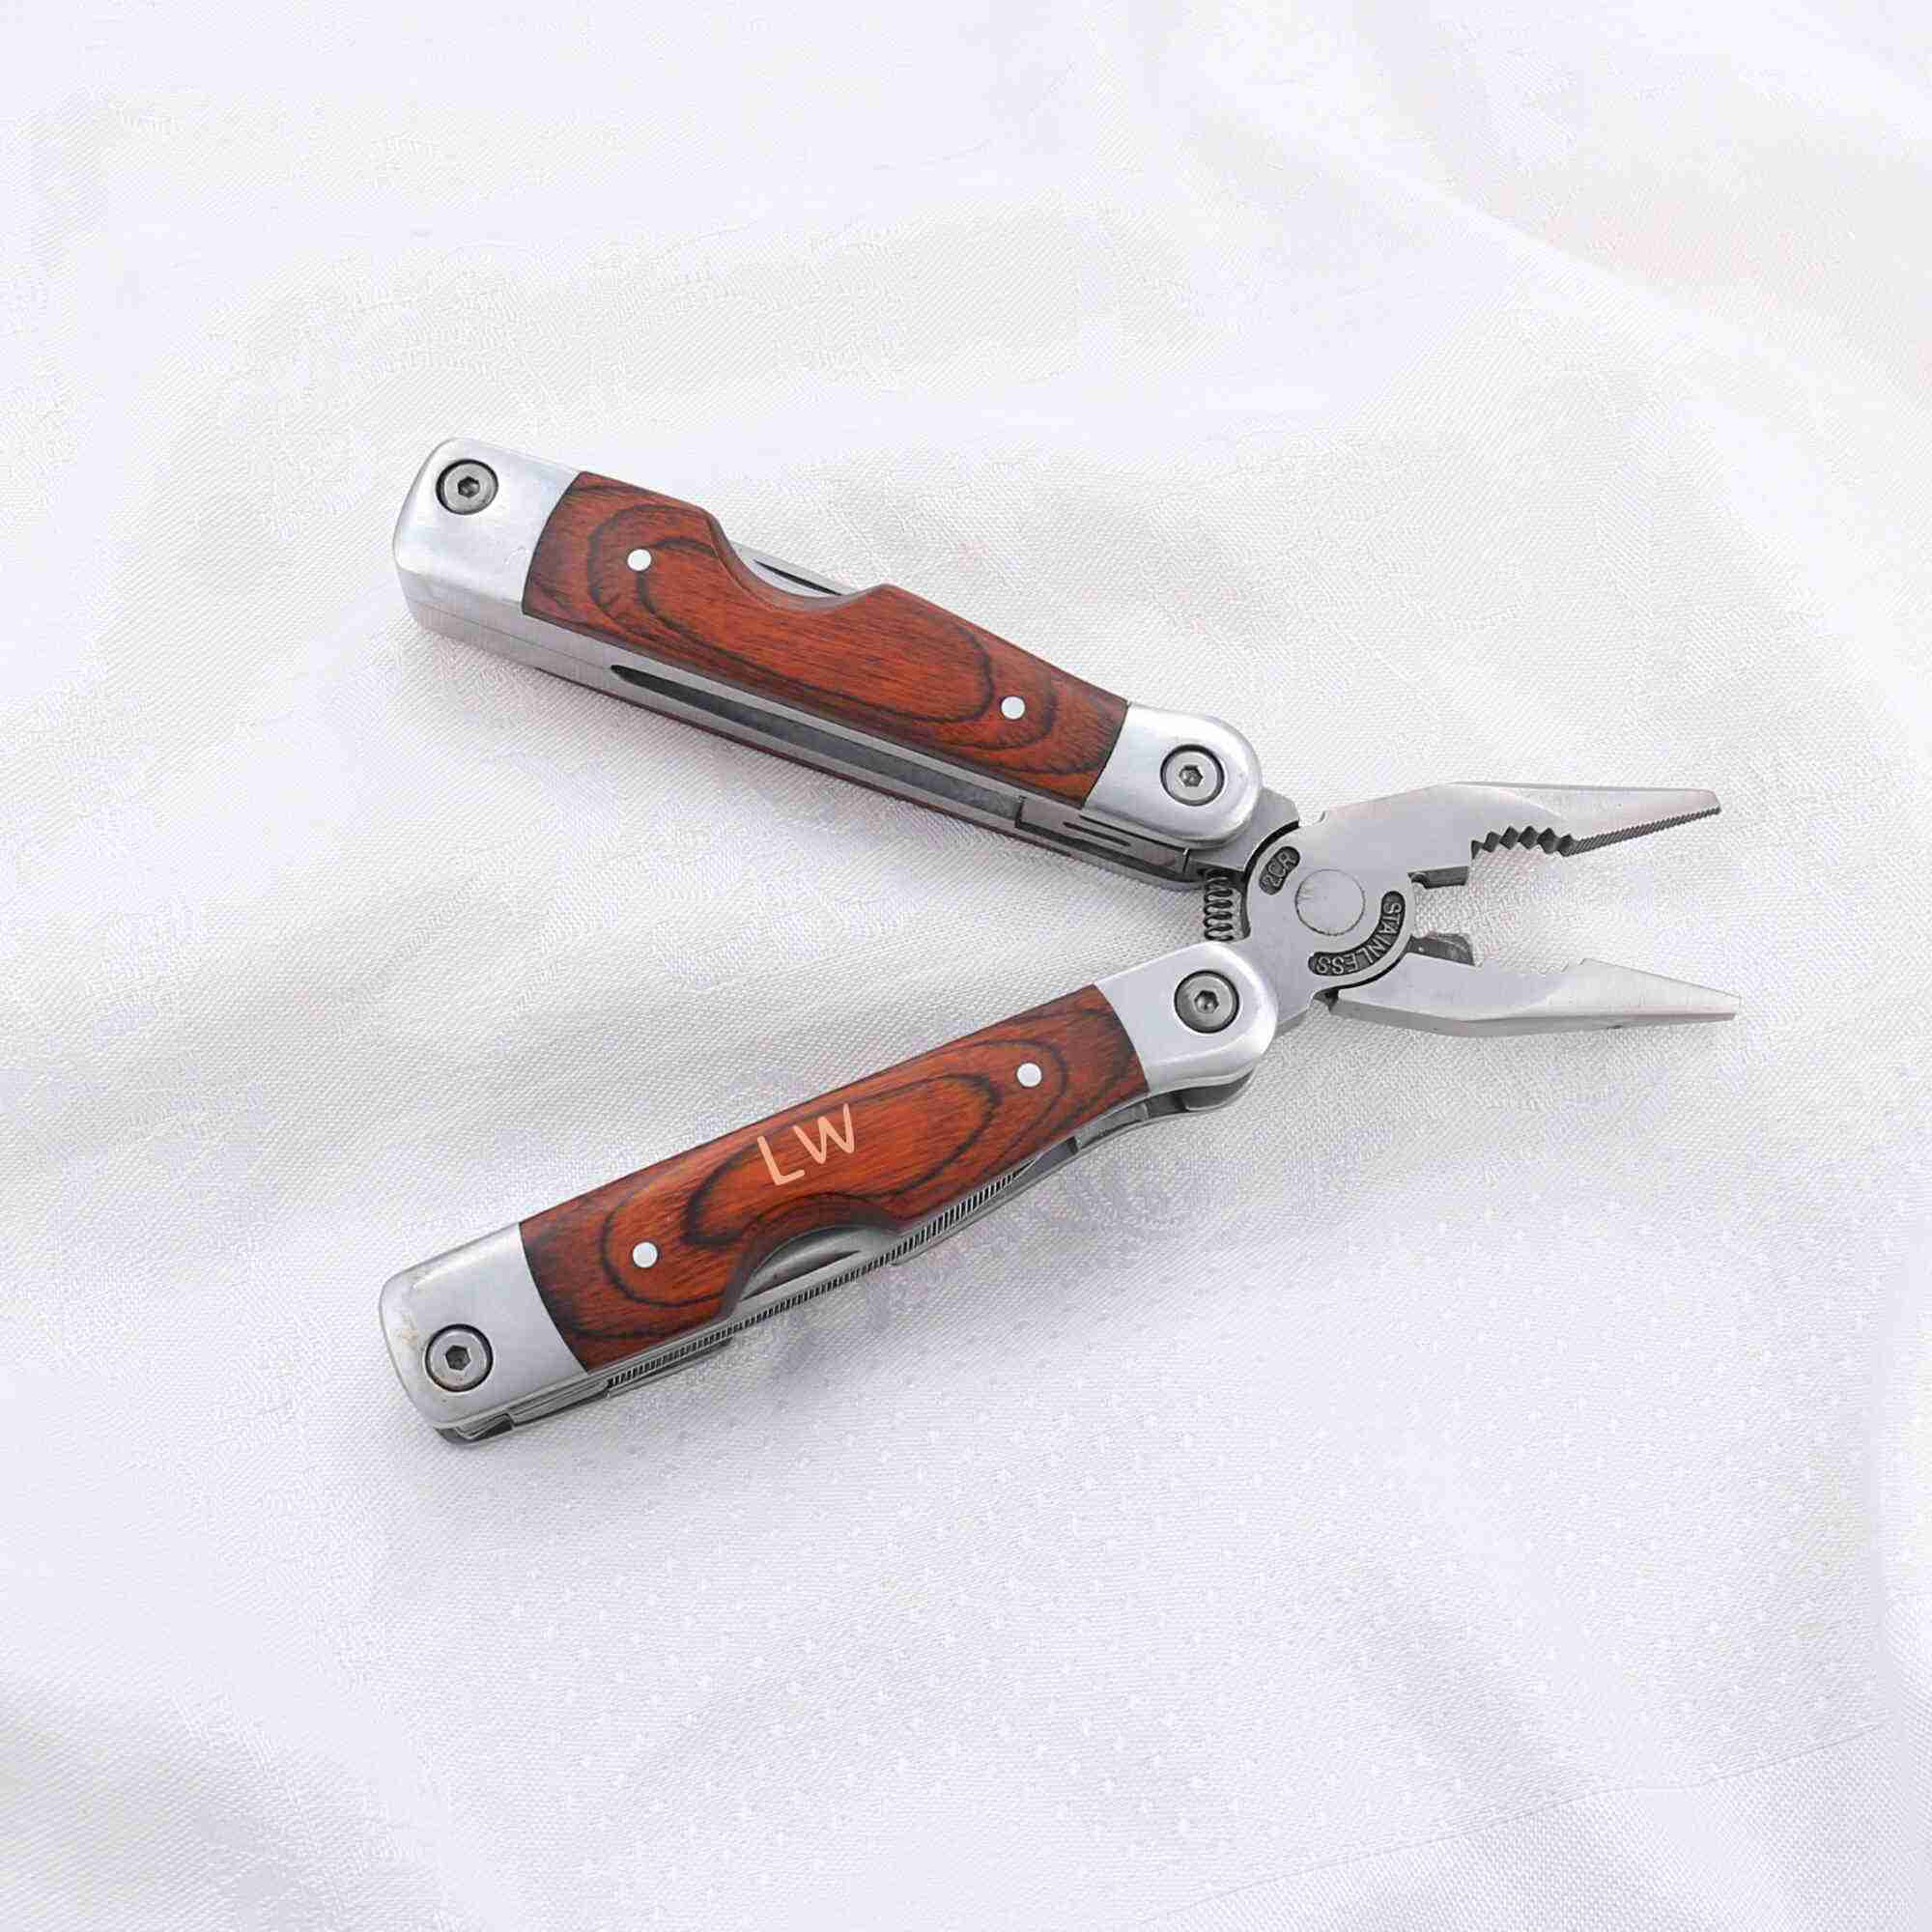 Multifunktionales Werkzeug mit Zange, Messer, Schraubenzieher und weiteren Werkzeugeigenschaften und personalisiertem Holzgriff